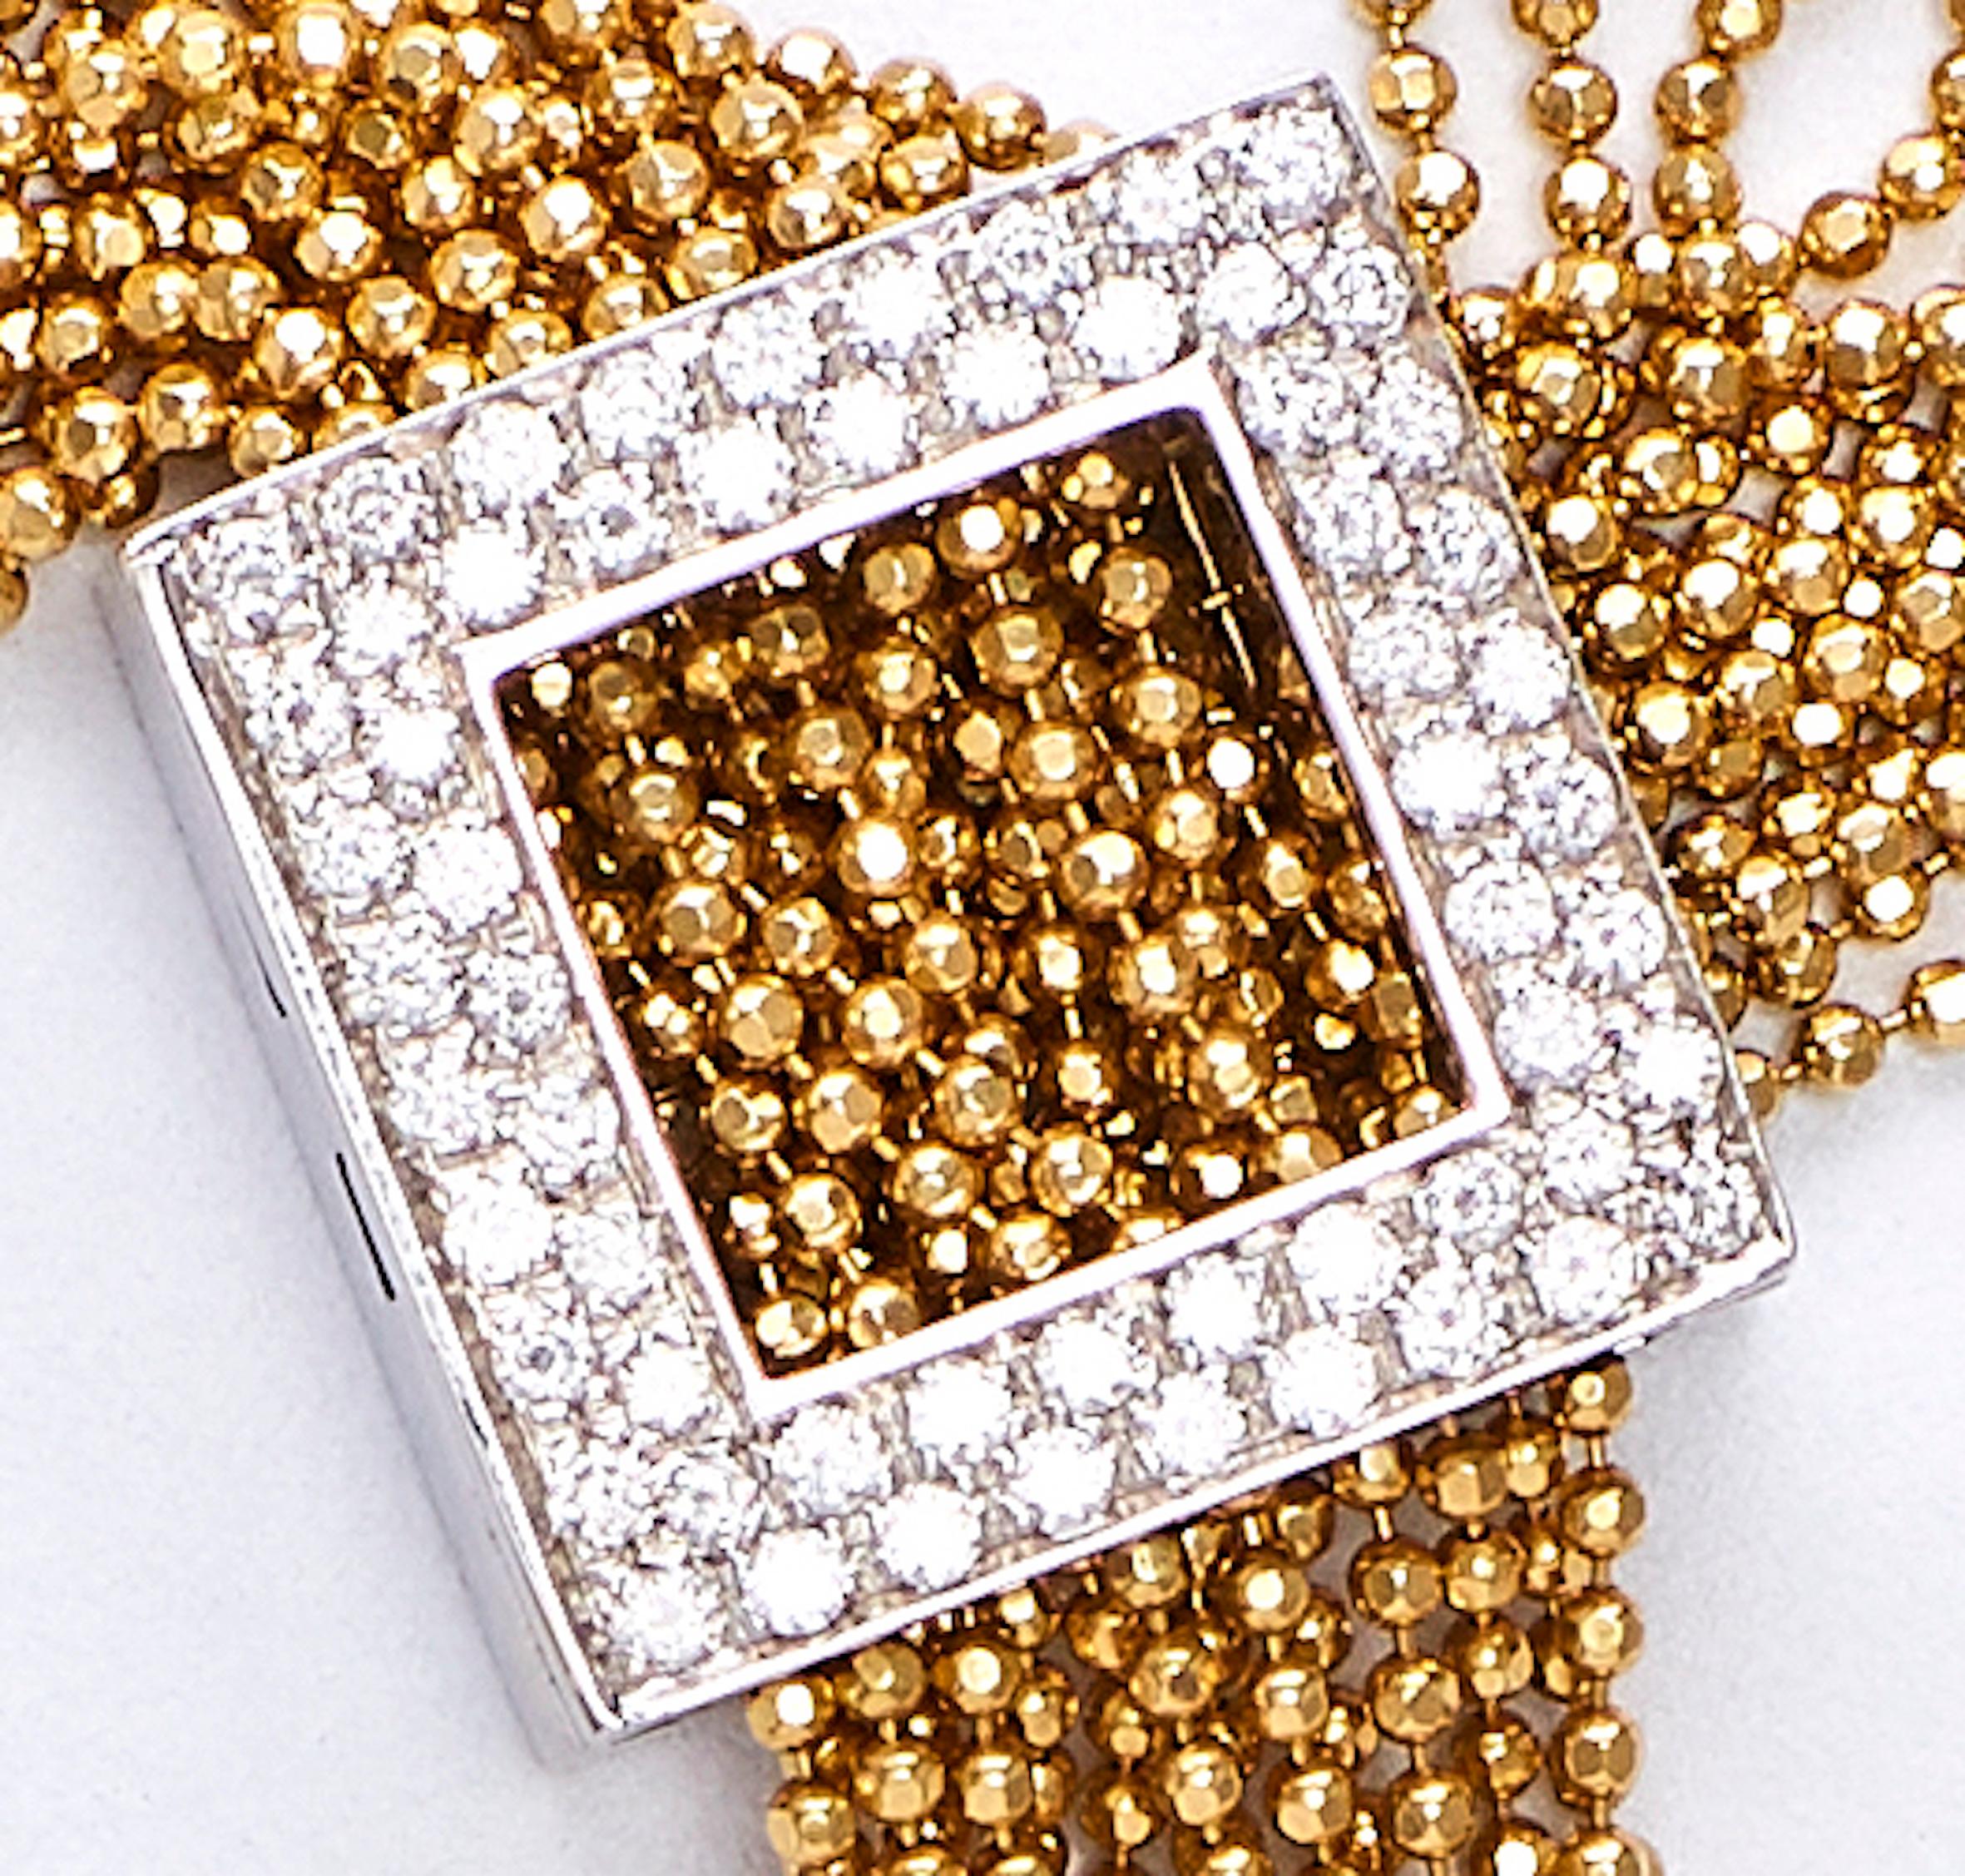 Collier en or avec fermoir à glands et diamants

Collier à la mode en or jaune avec 15 glands en or qui s'ajustent à la longueur désirée. 
Fabriqué en France dans les années 1980.
Fermoir de forme carrée serti de diamants de taille ronde de 2,2